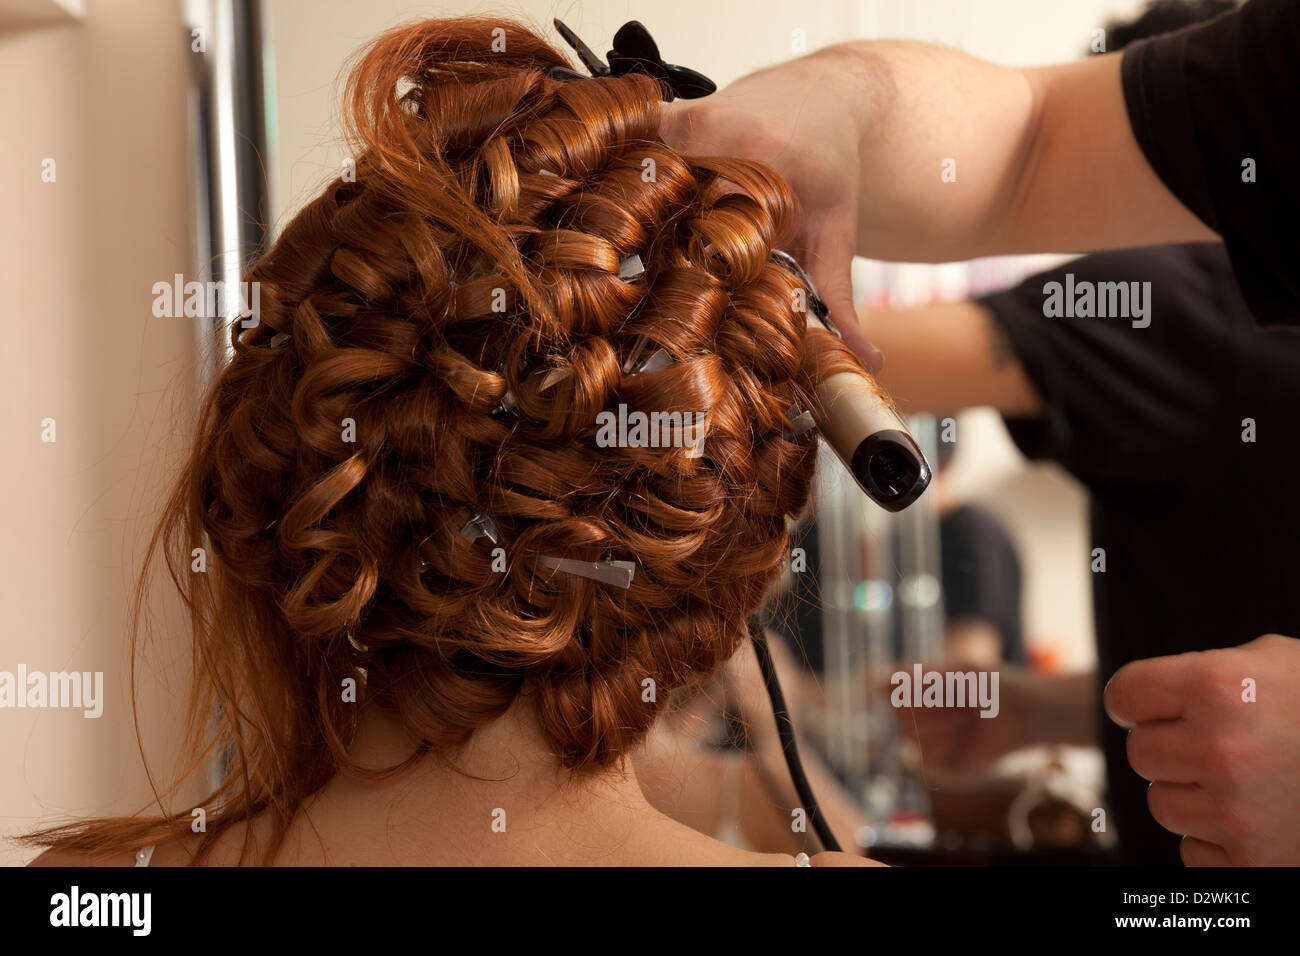 La mise en place d'un styliste coiffure de la mariée avant le mariage Banque D'Images